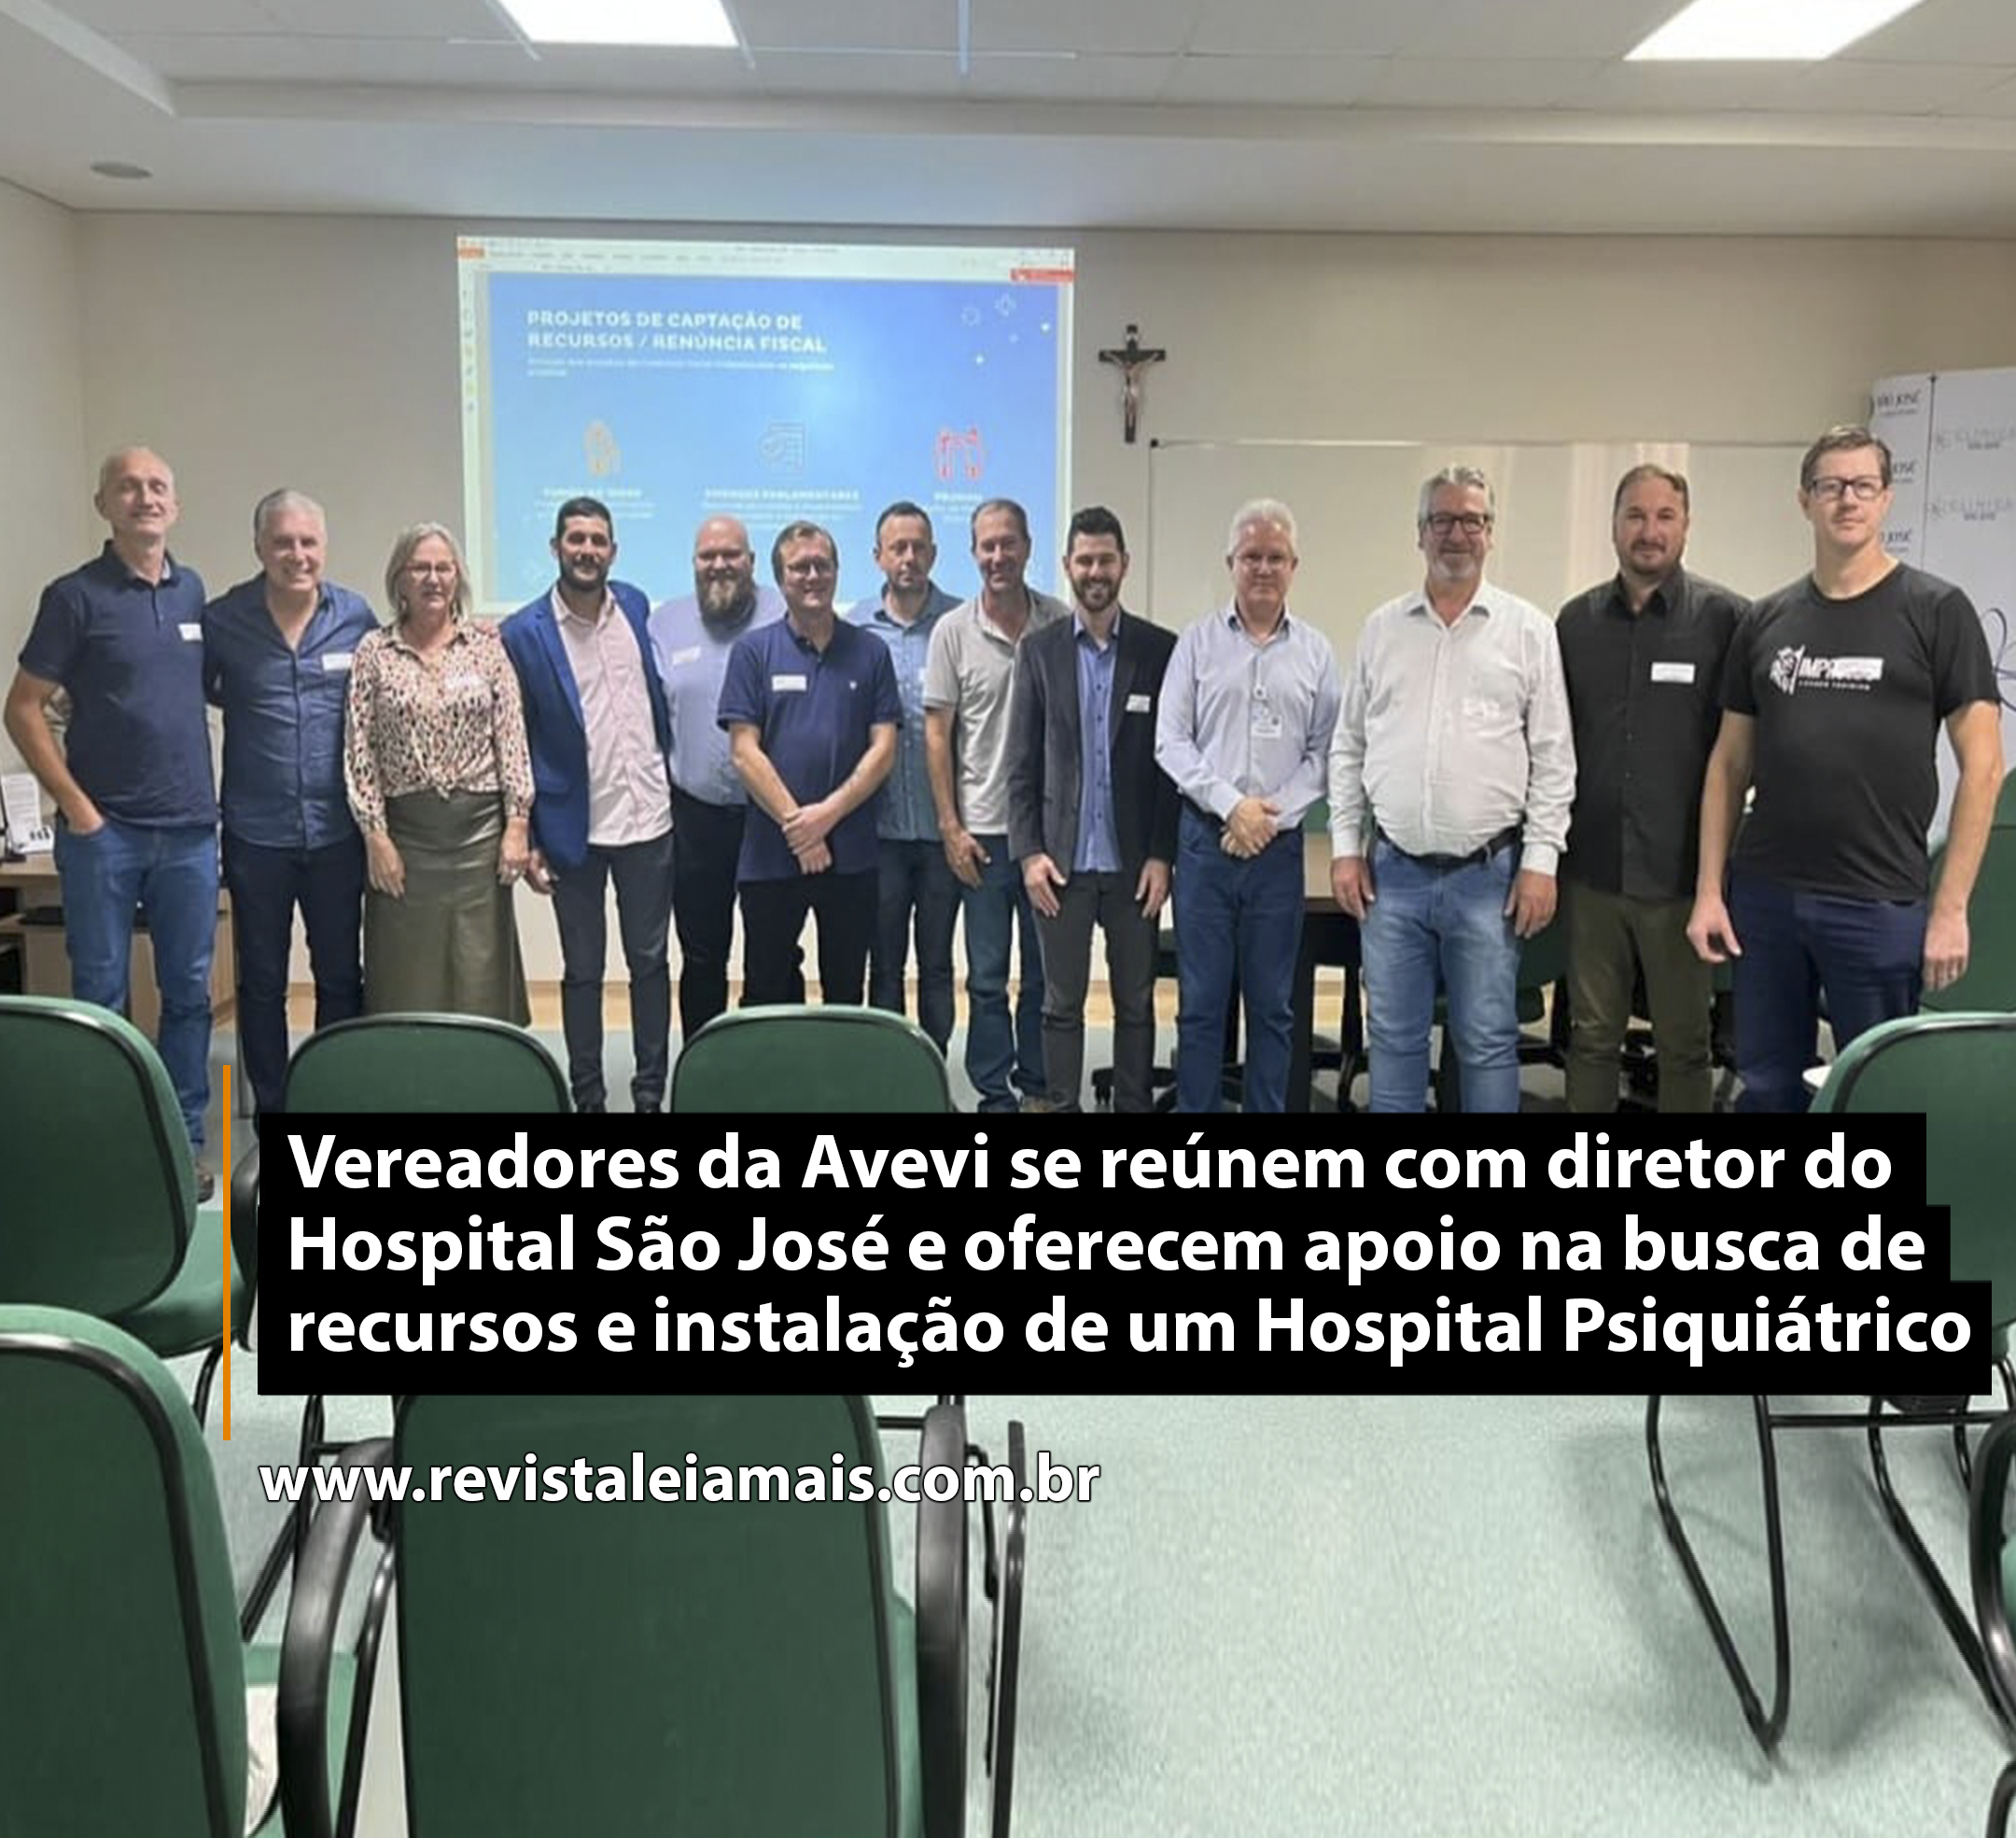 Vereadores da Avevi se reúnem com diretor do Hospital São José e oferecem apoio na busca de recursos e instalação de um Hospital Psiquiátrico